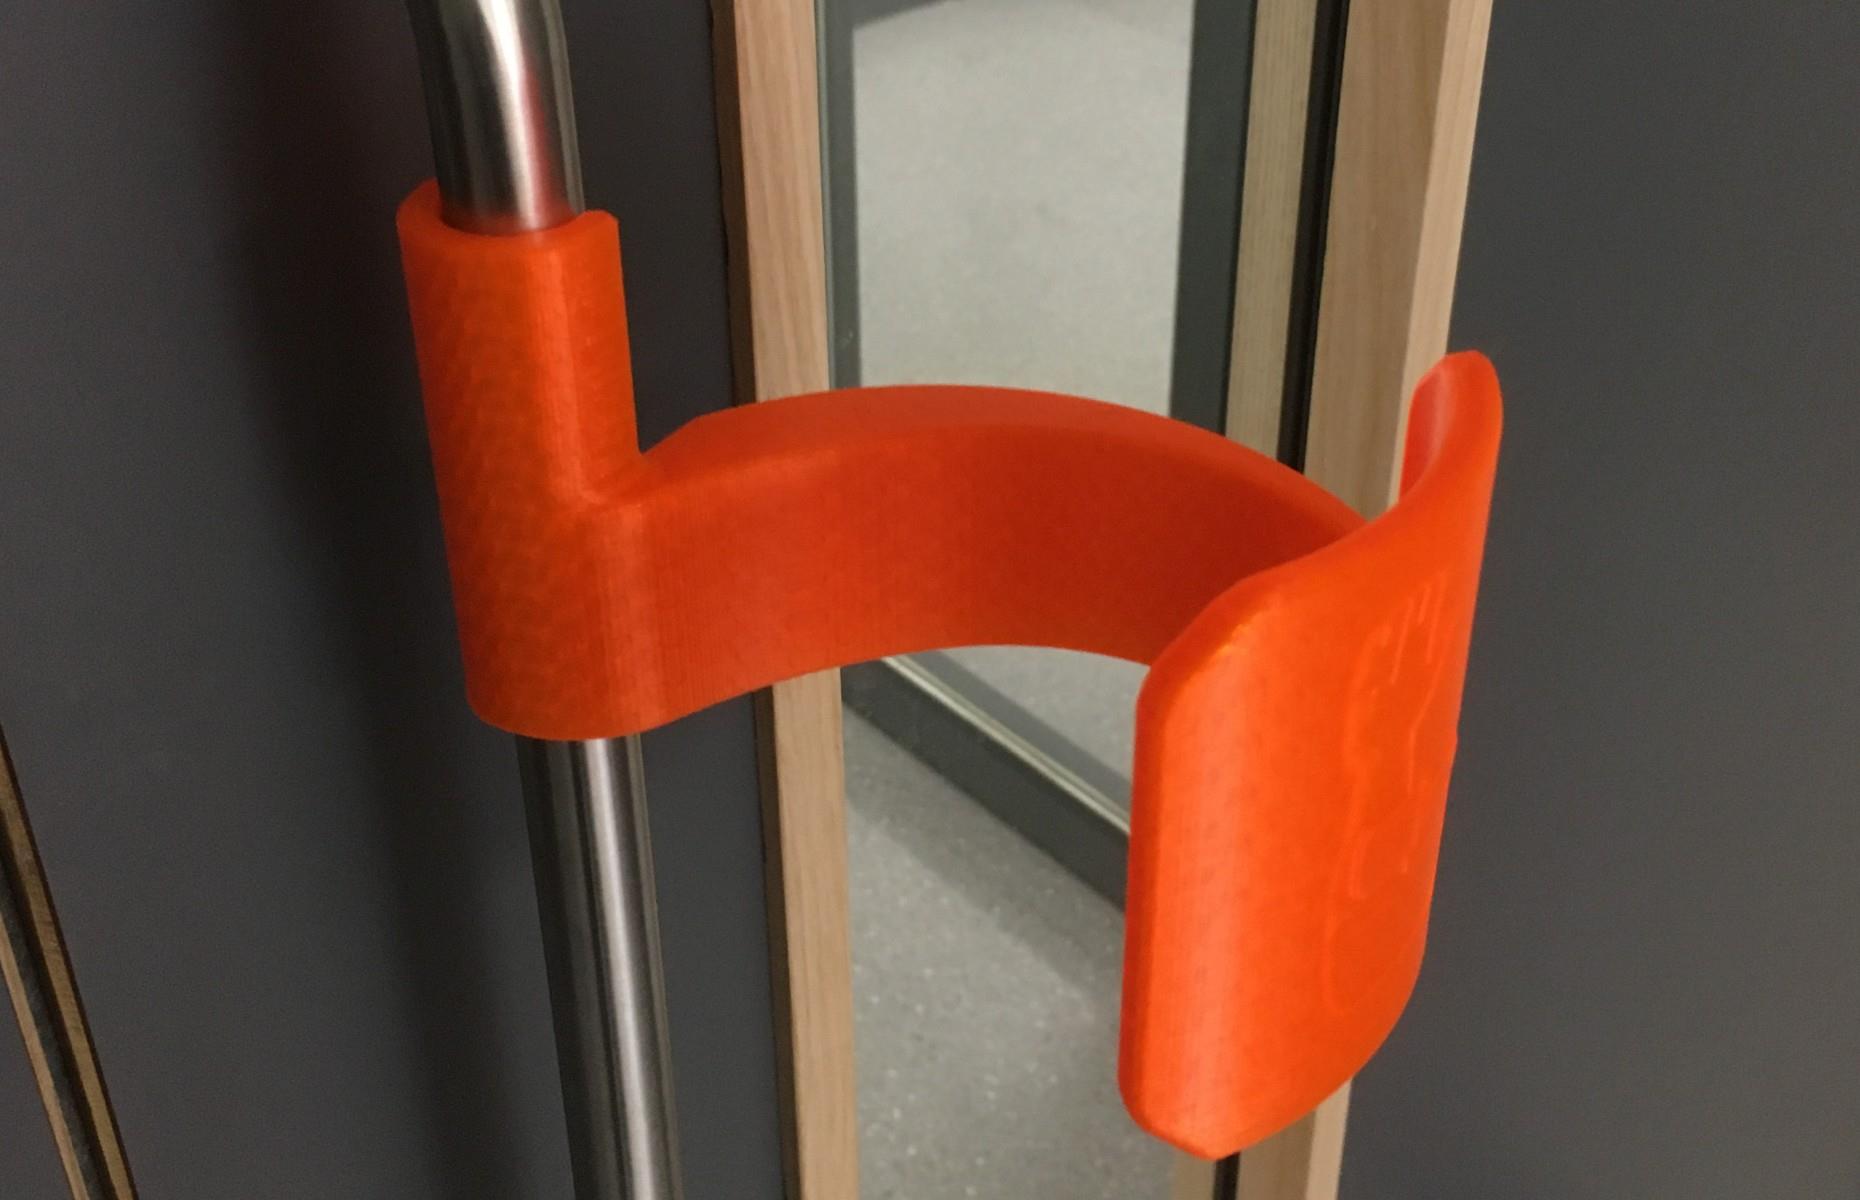 Hands-free door handle